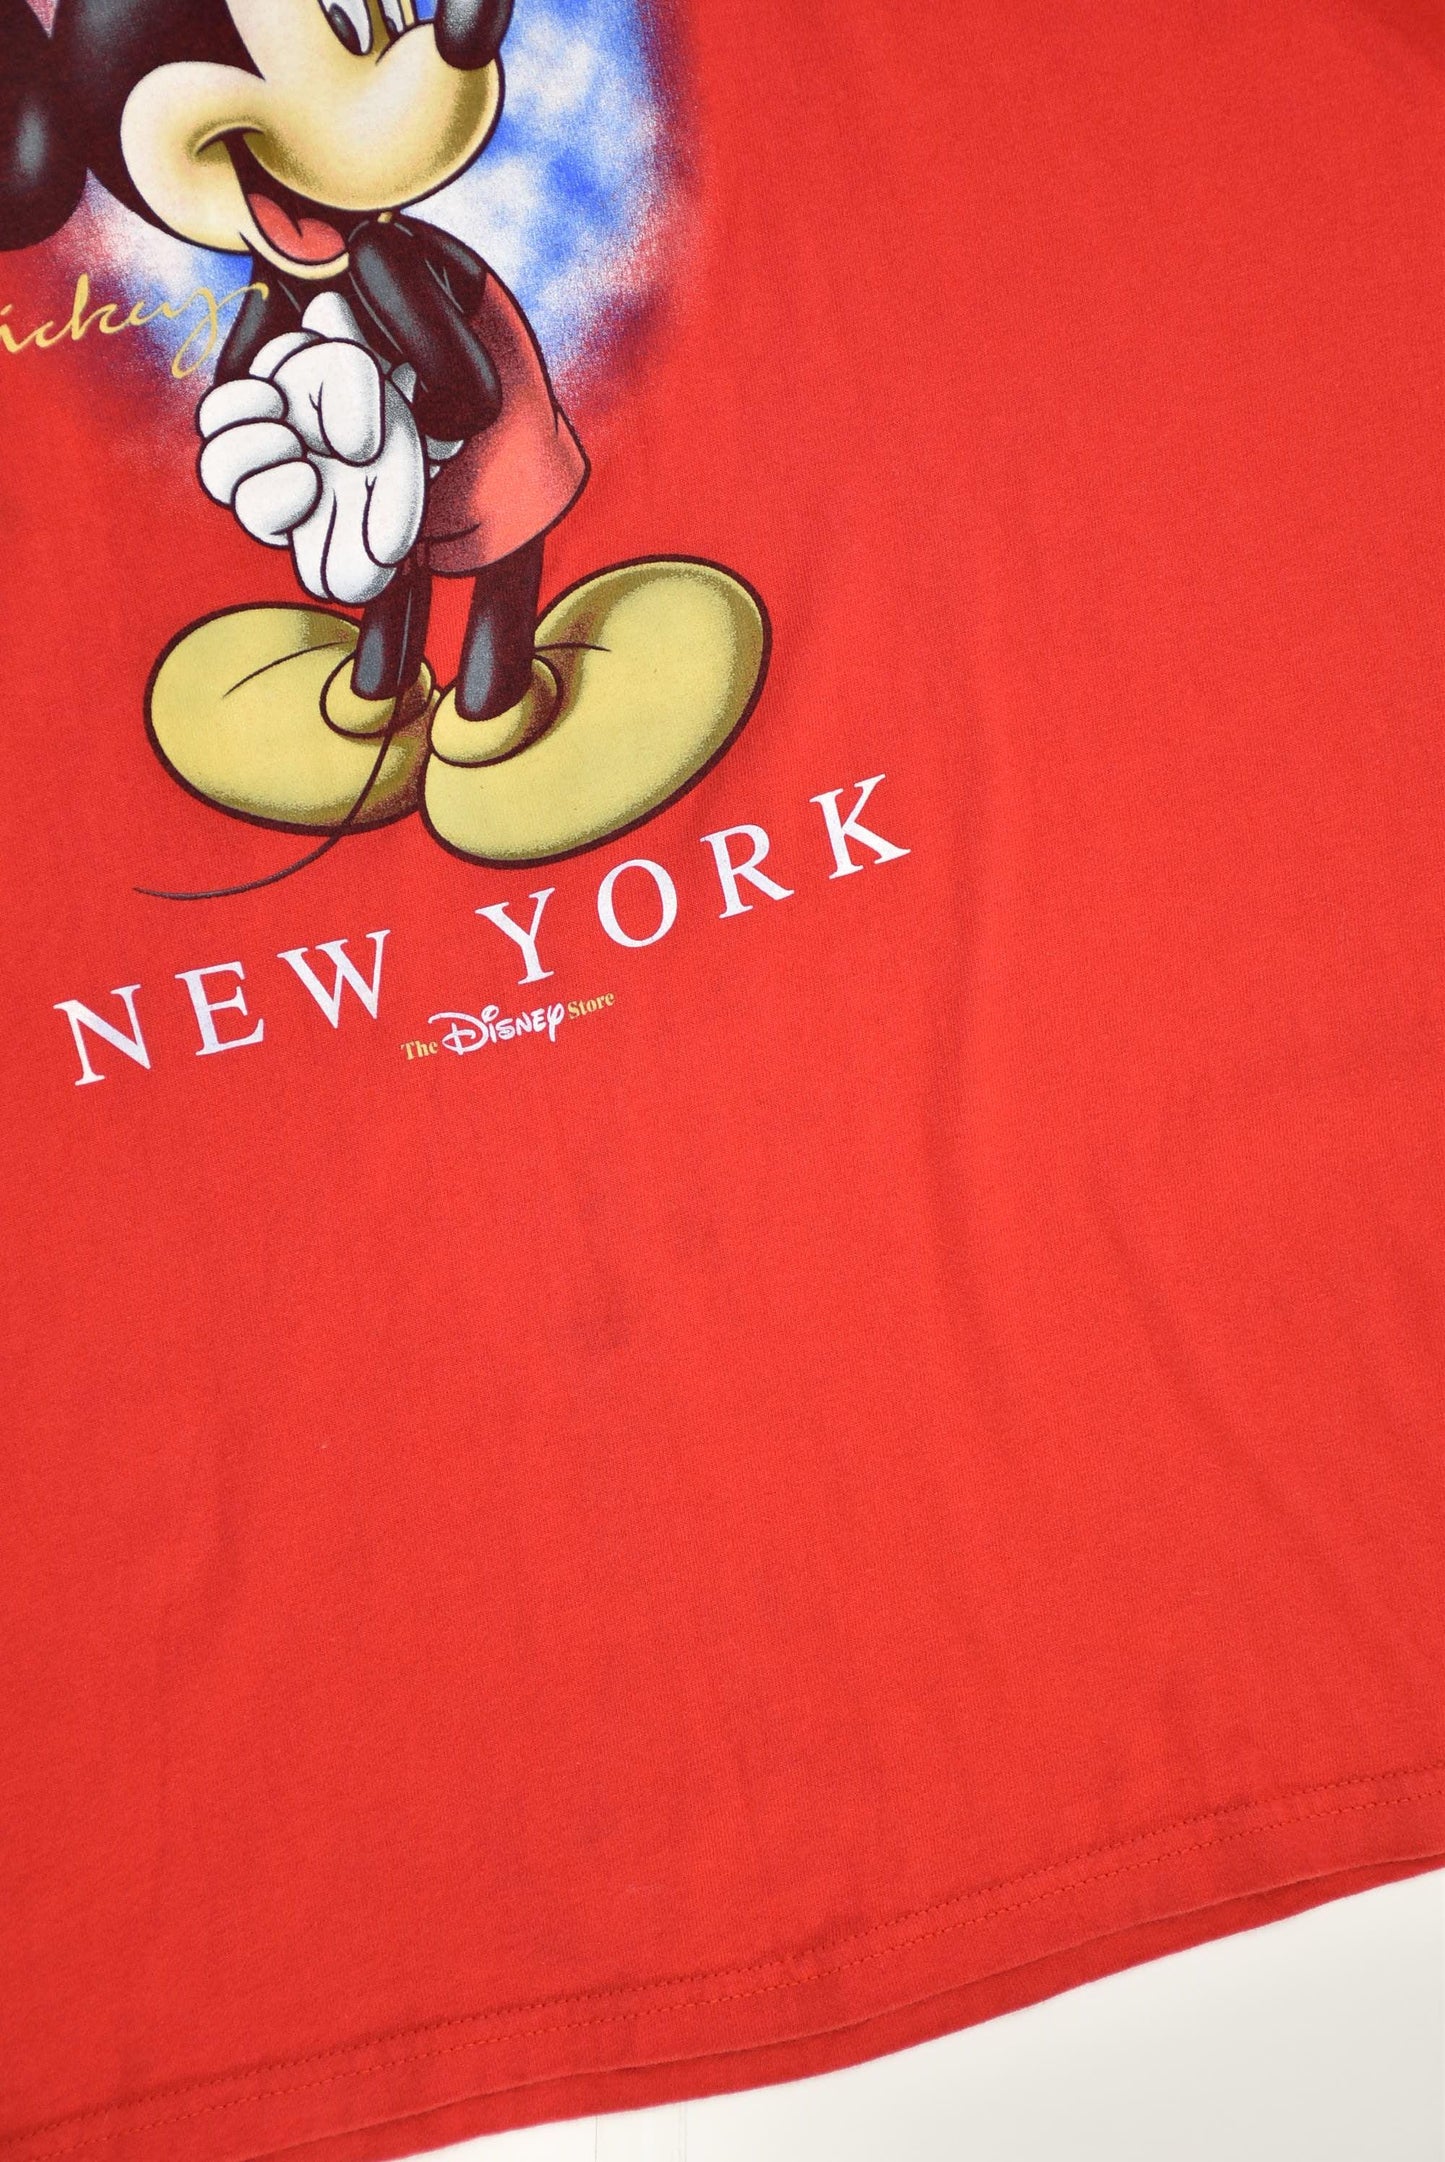 90s Disney New York T-shirt (XL) - Slayyy Vintage